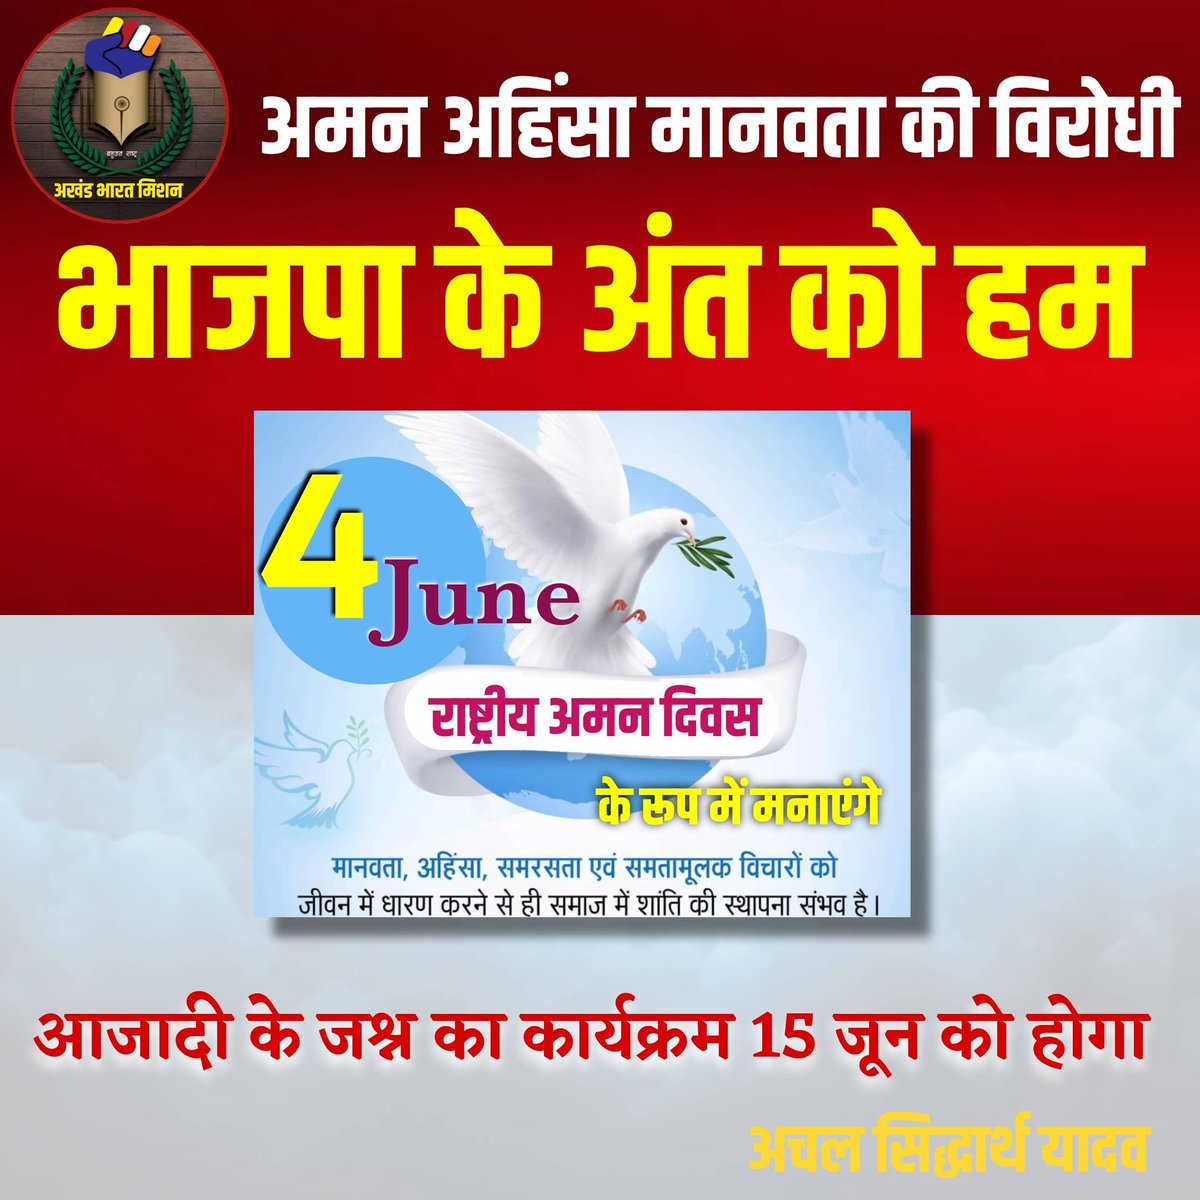 अमन अहिंसा और मानवता की विरोधी भाजपा के अंत को हम 4 जून राष्ट्रीय अमन दिवस के रूप में मनाएंगे। Lucknow स्थित 15 जून को भव्य अमन दिवस समारोह कार्यक्रम का आयोजन होगा। @RahulGandhi @yadavakhilesh @INCIndia @samajwadiparty